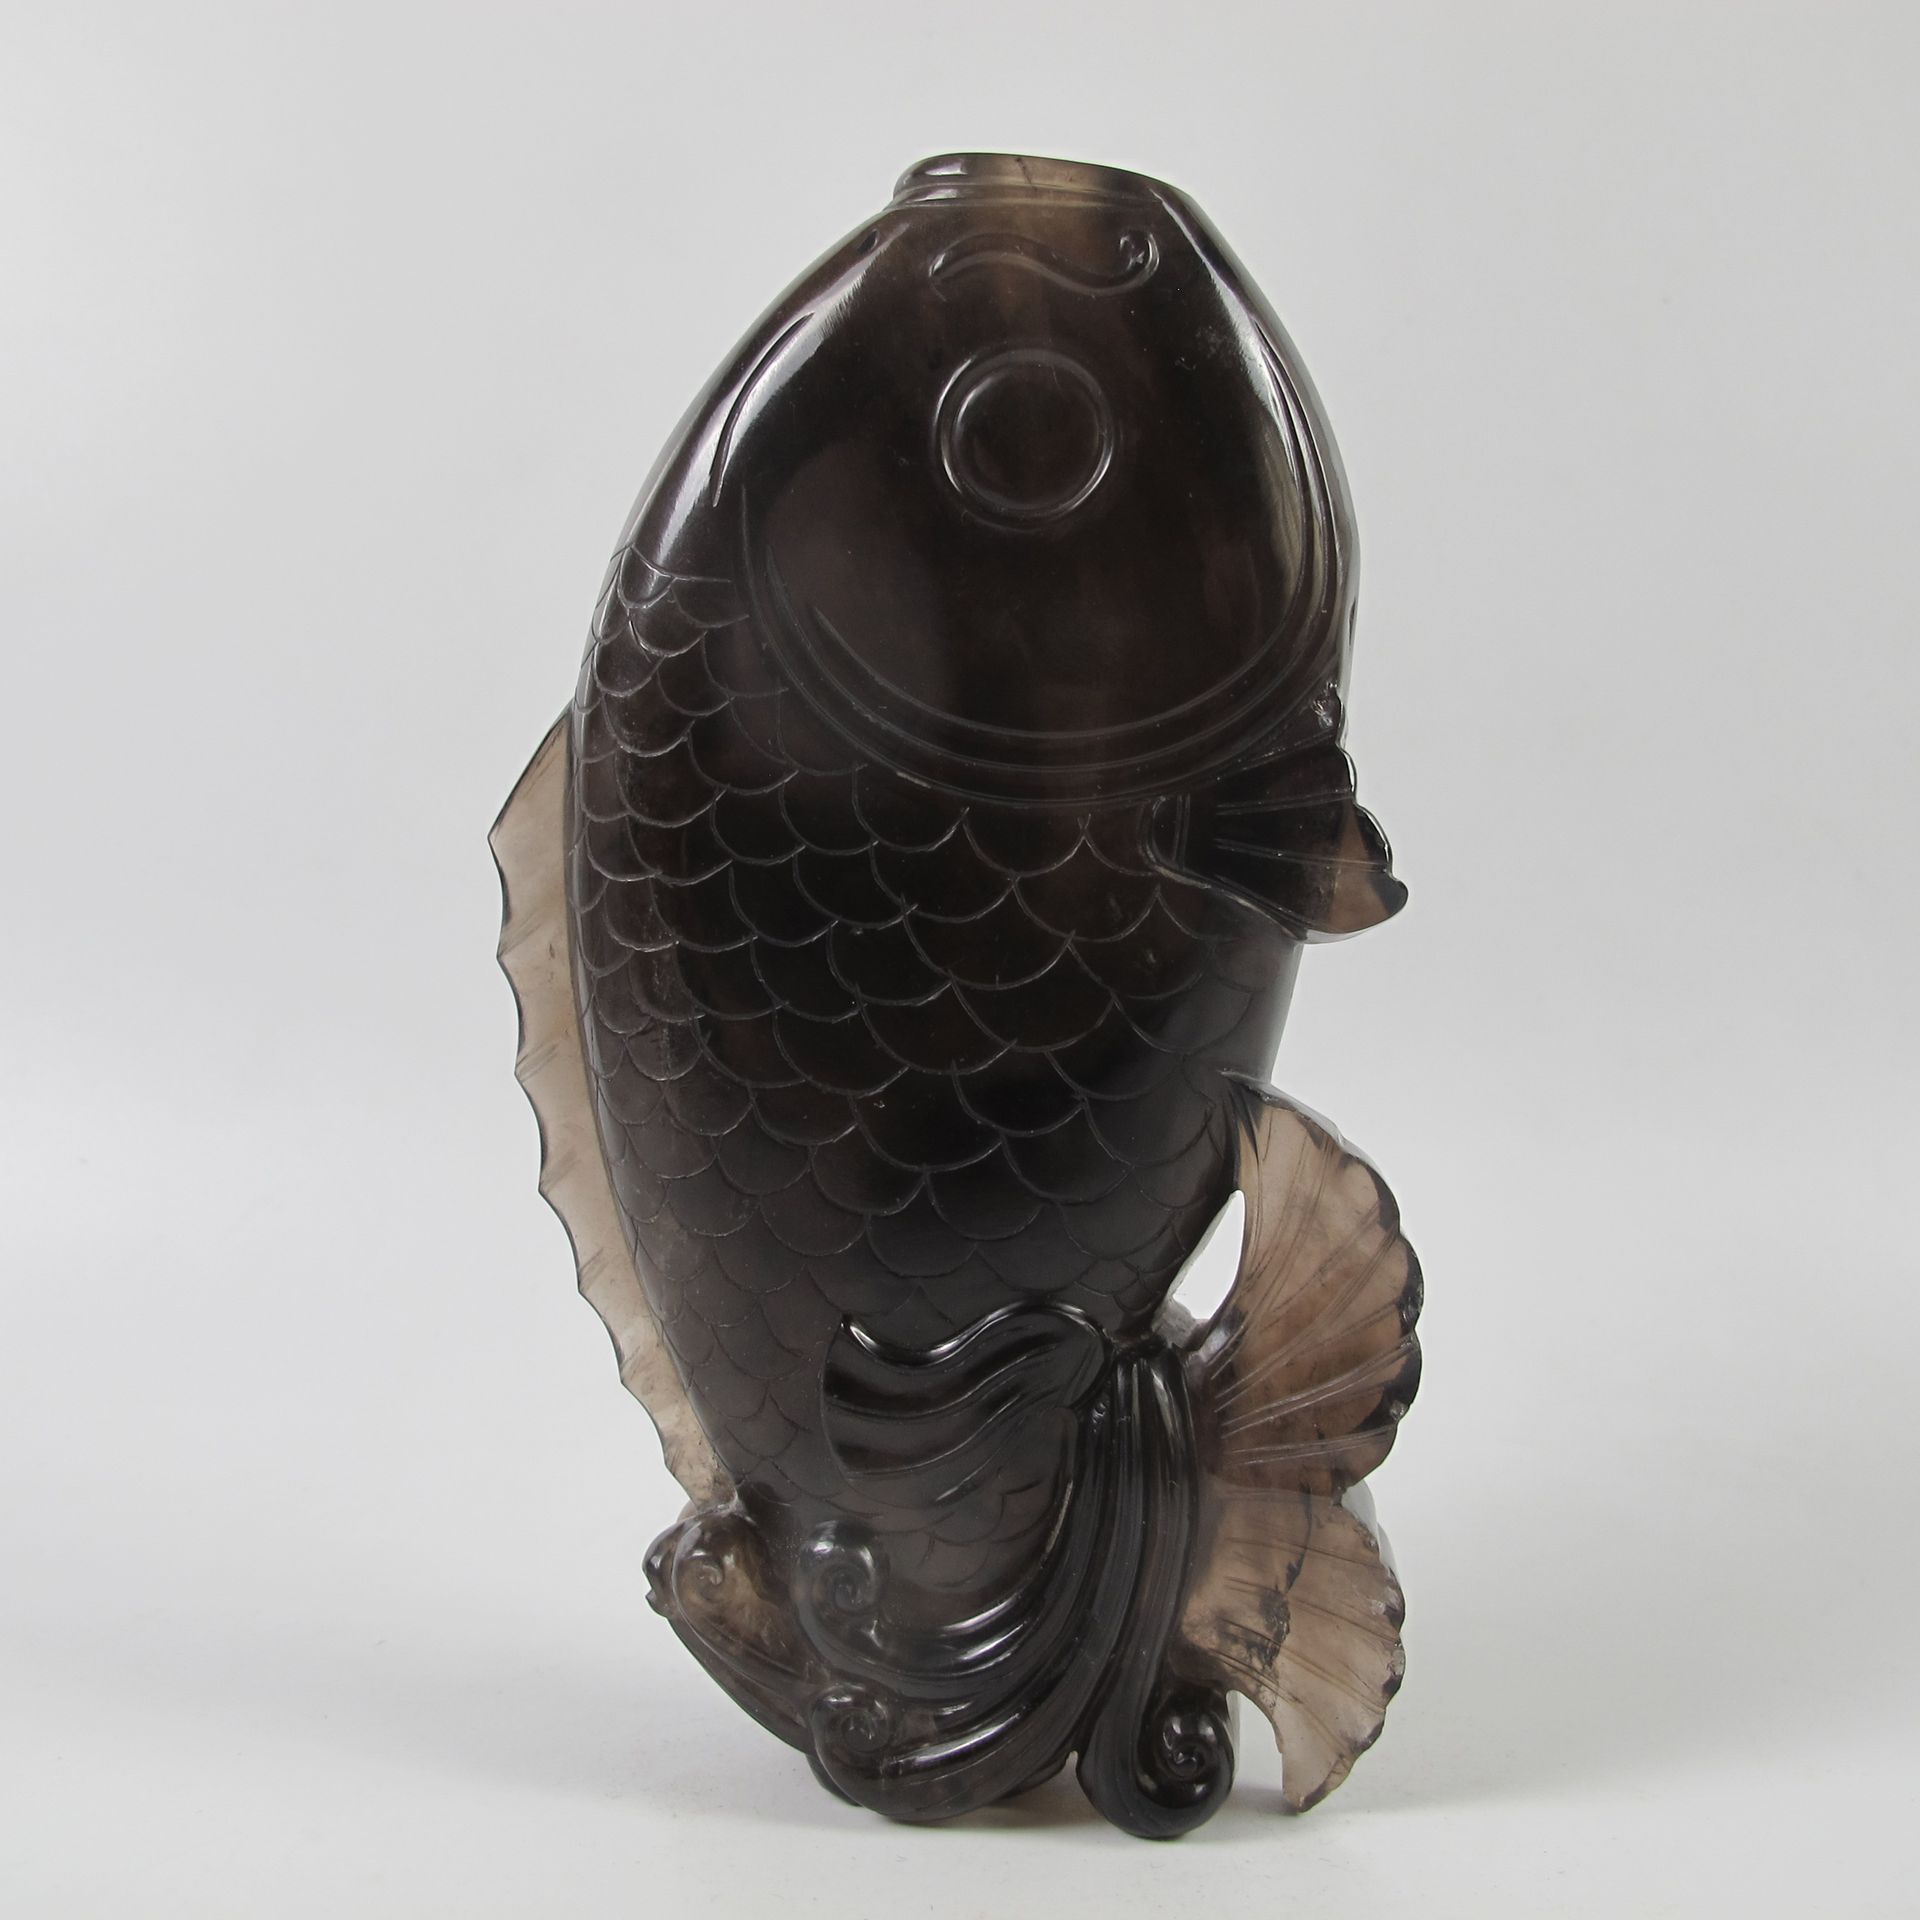 Null 中国。鲤鱼形状的大型黑色岩石水晶瓶。天然烟熏石英。长13.5厘米。19世纪。